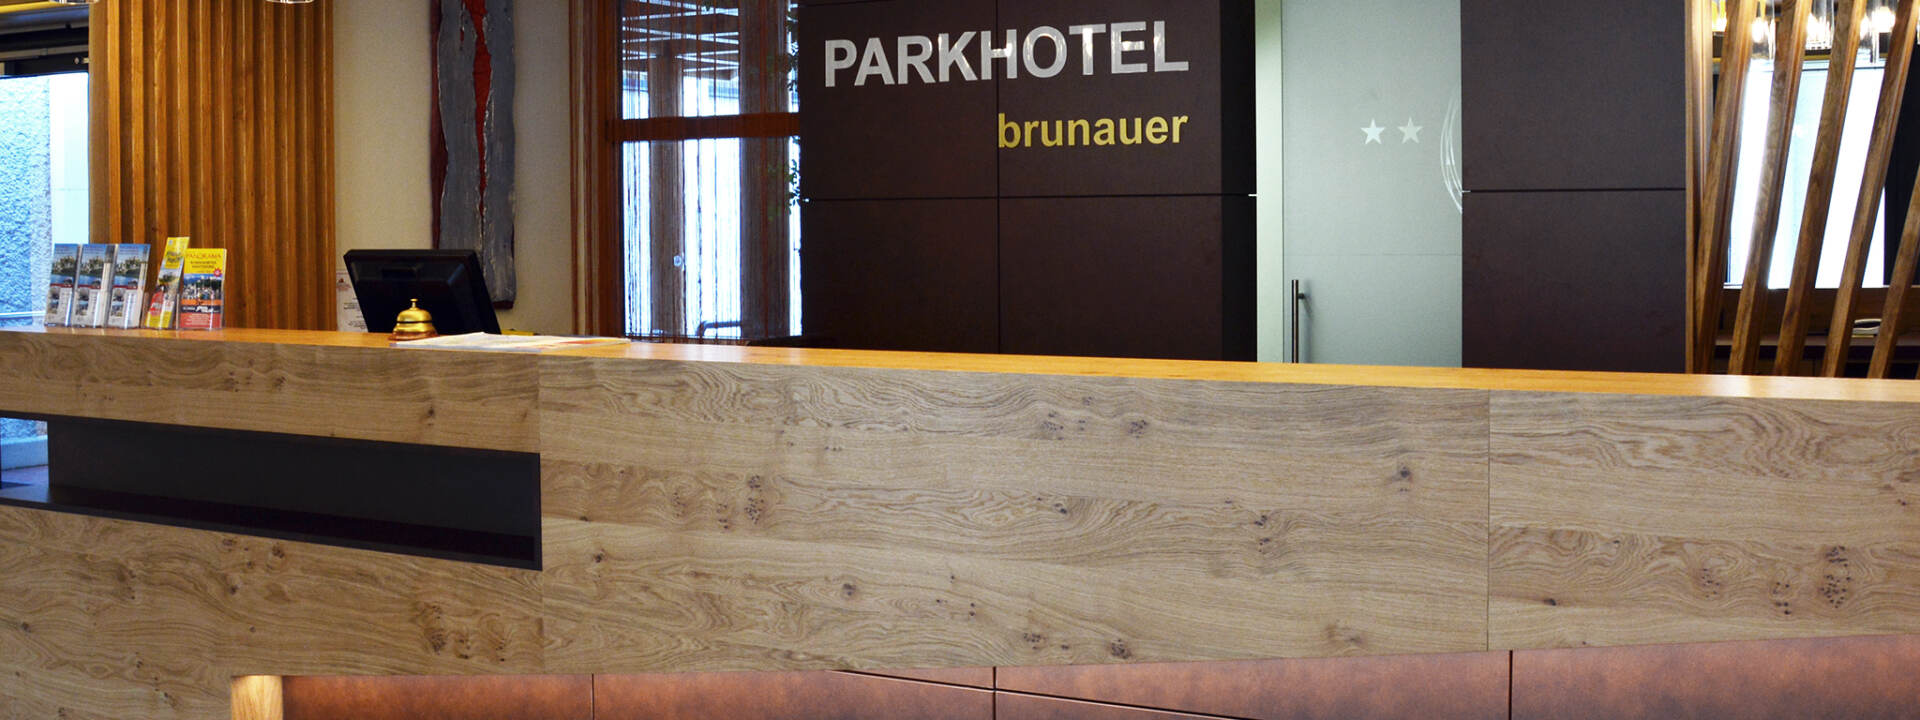 Parkhotel Brunauer - reception © Parkhotel Brunauer